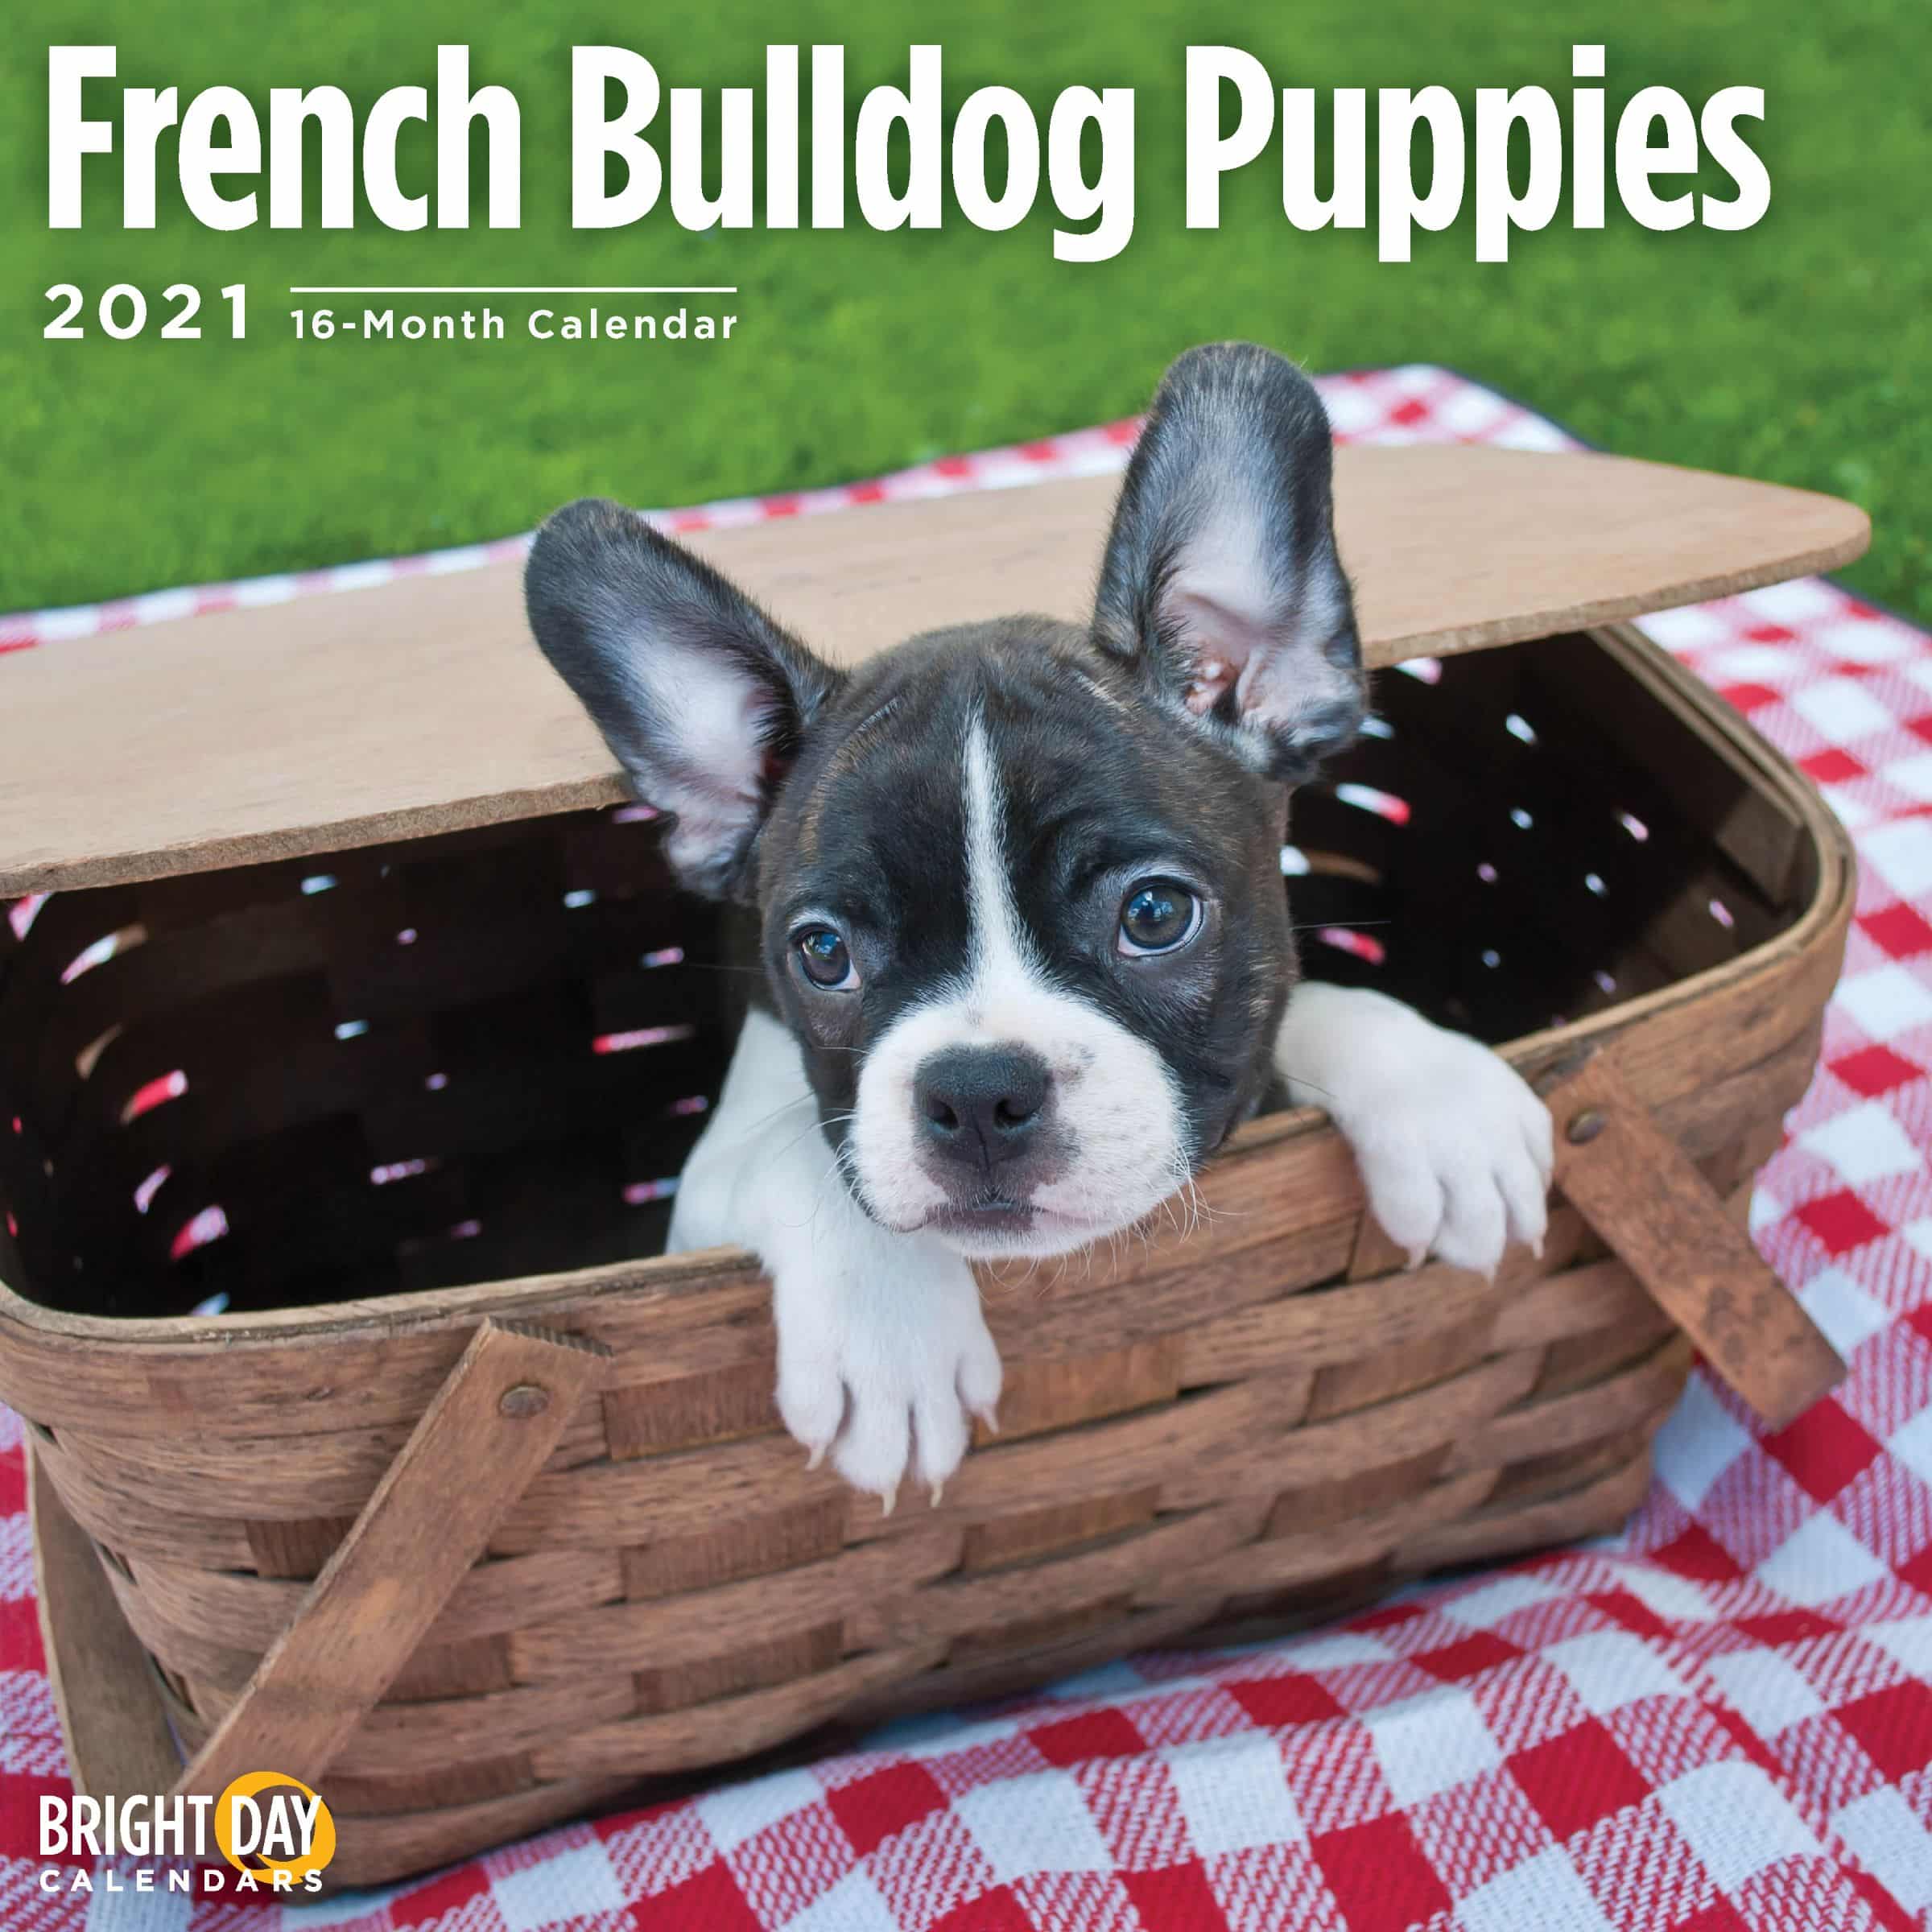 2021 French Bulldog Puppies 12 x 12 Wall Calendar Cute Dog